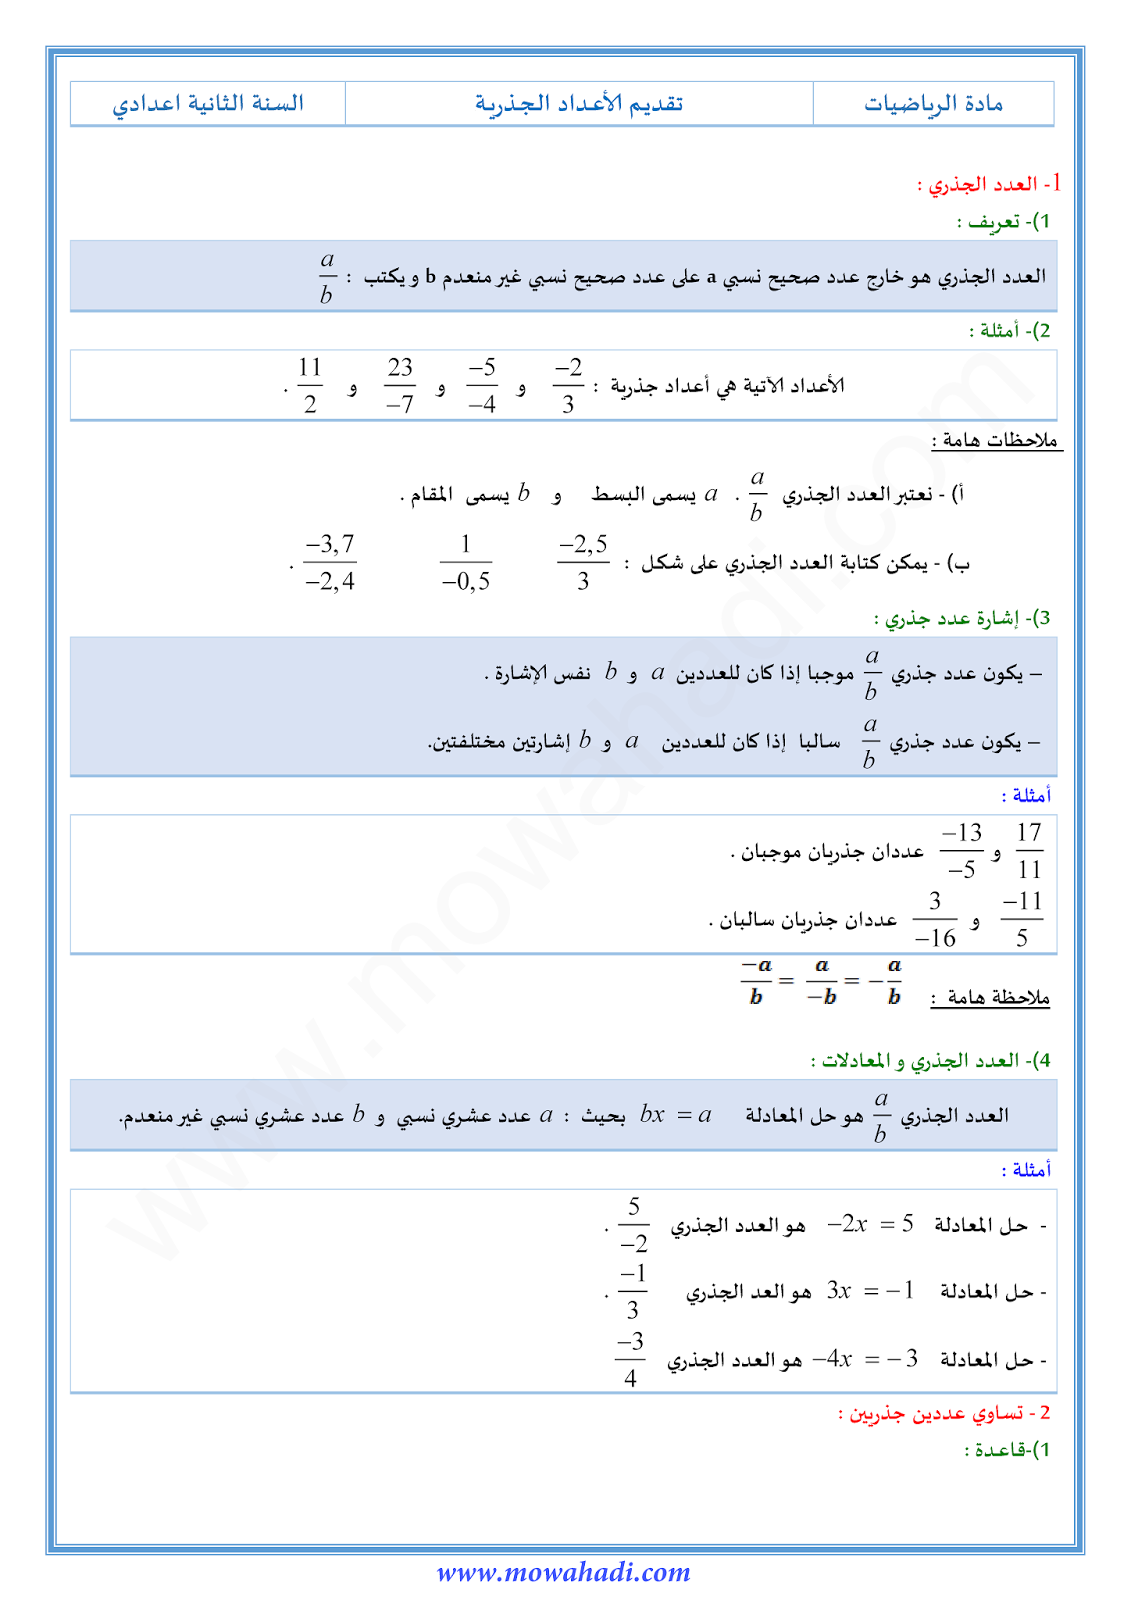 تقديم الاعداد الجذرية للسنة الثانية اعدادي في مادة الرياضيات 1-cours-math2_001